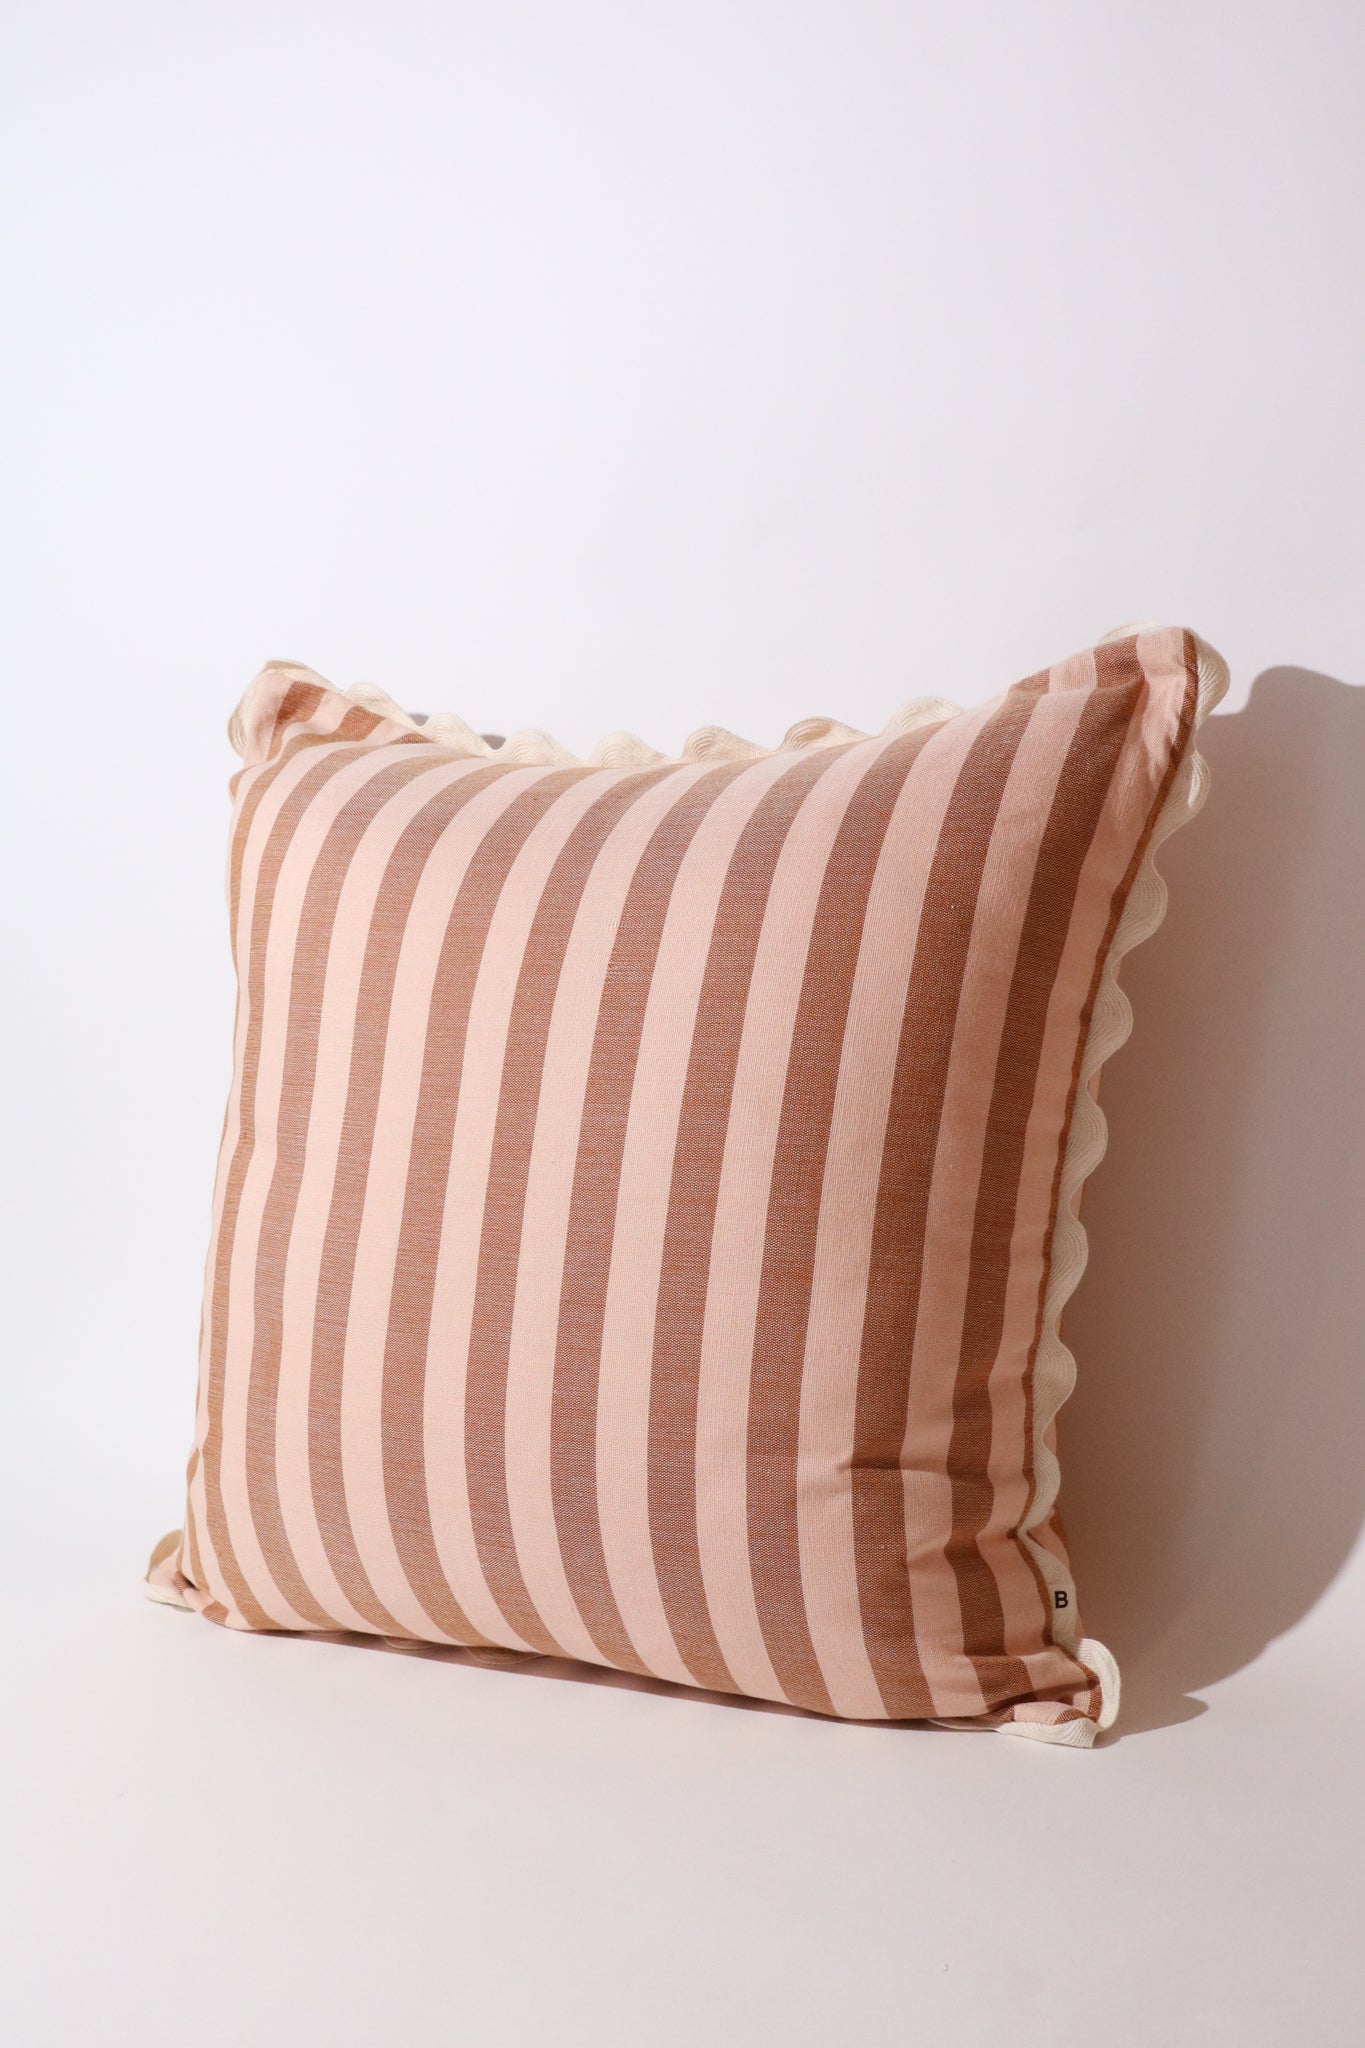 Woven Striped Cushion